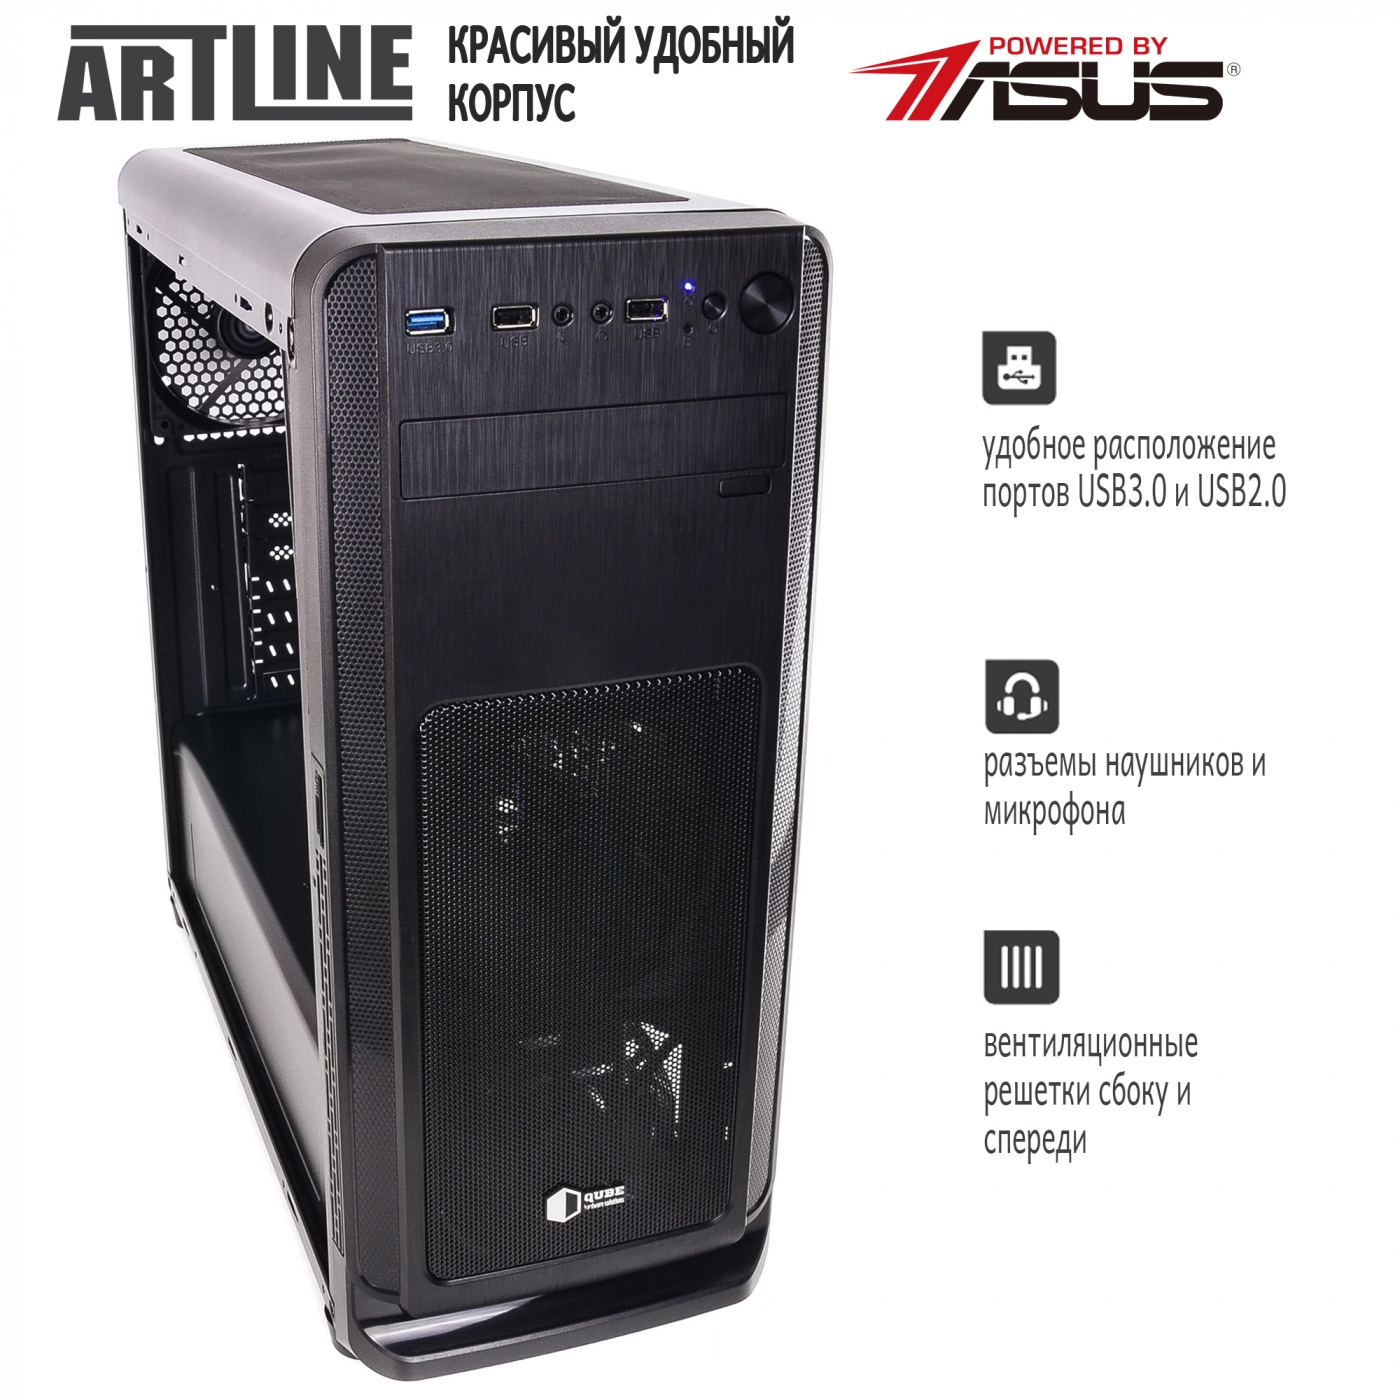 Купить Сервер ARTLINE Business T61v06 - фото 4